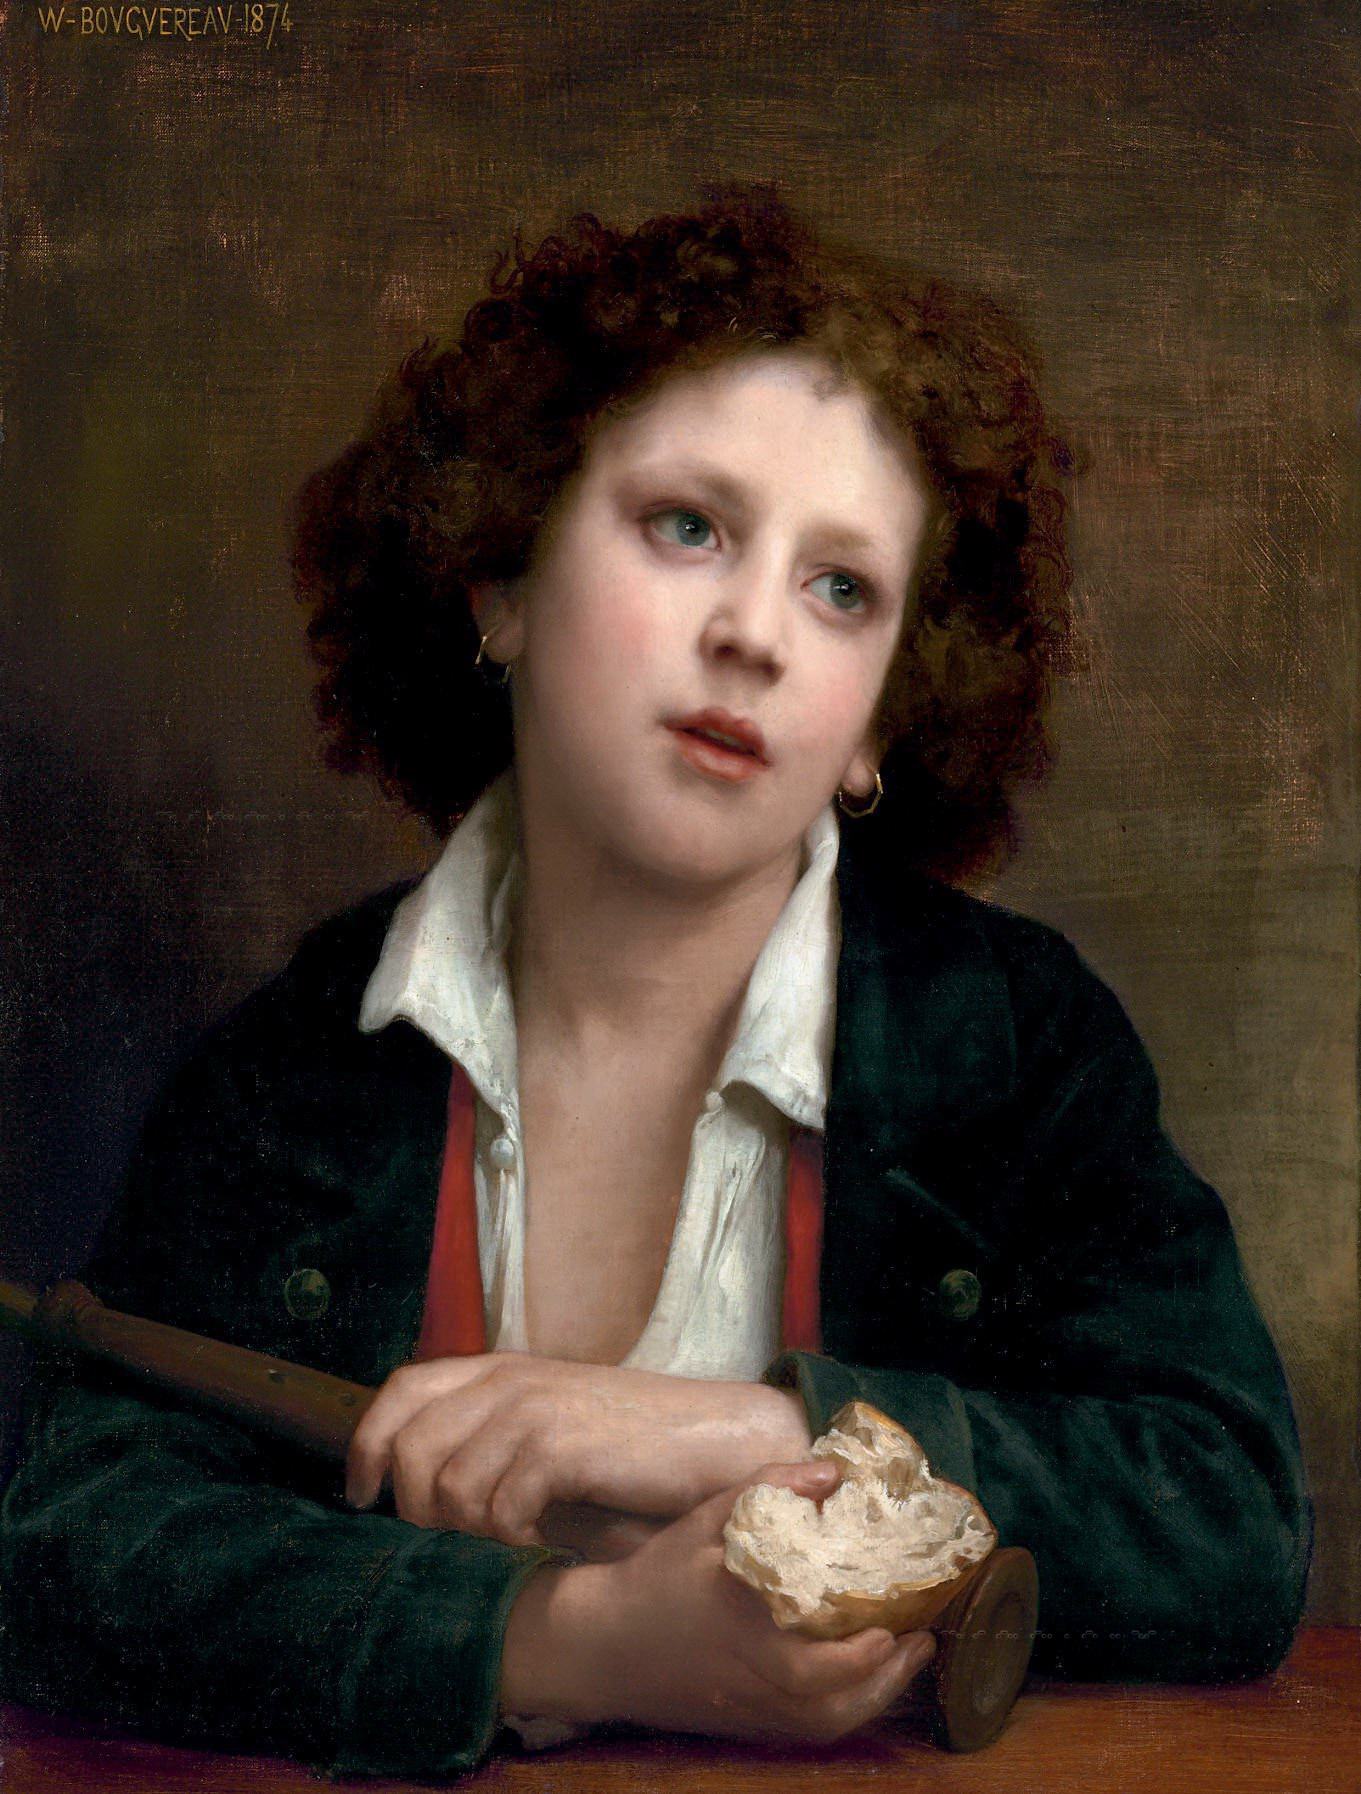 Адольф Вильям бугро. "Итальянский мальчик с куском хлеба". 1874. Частная коллекция.